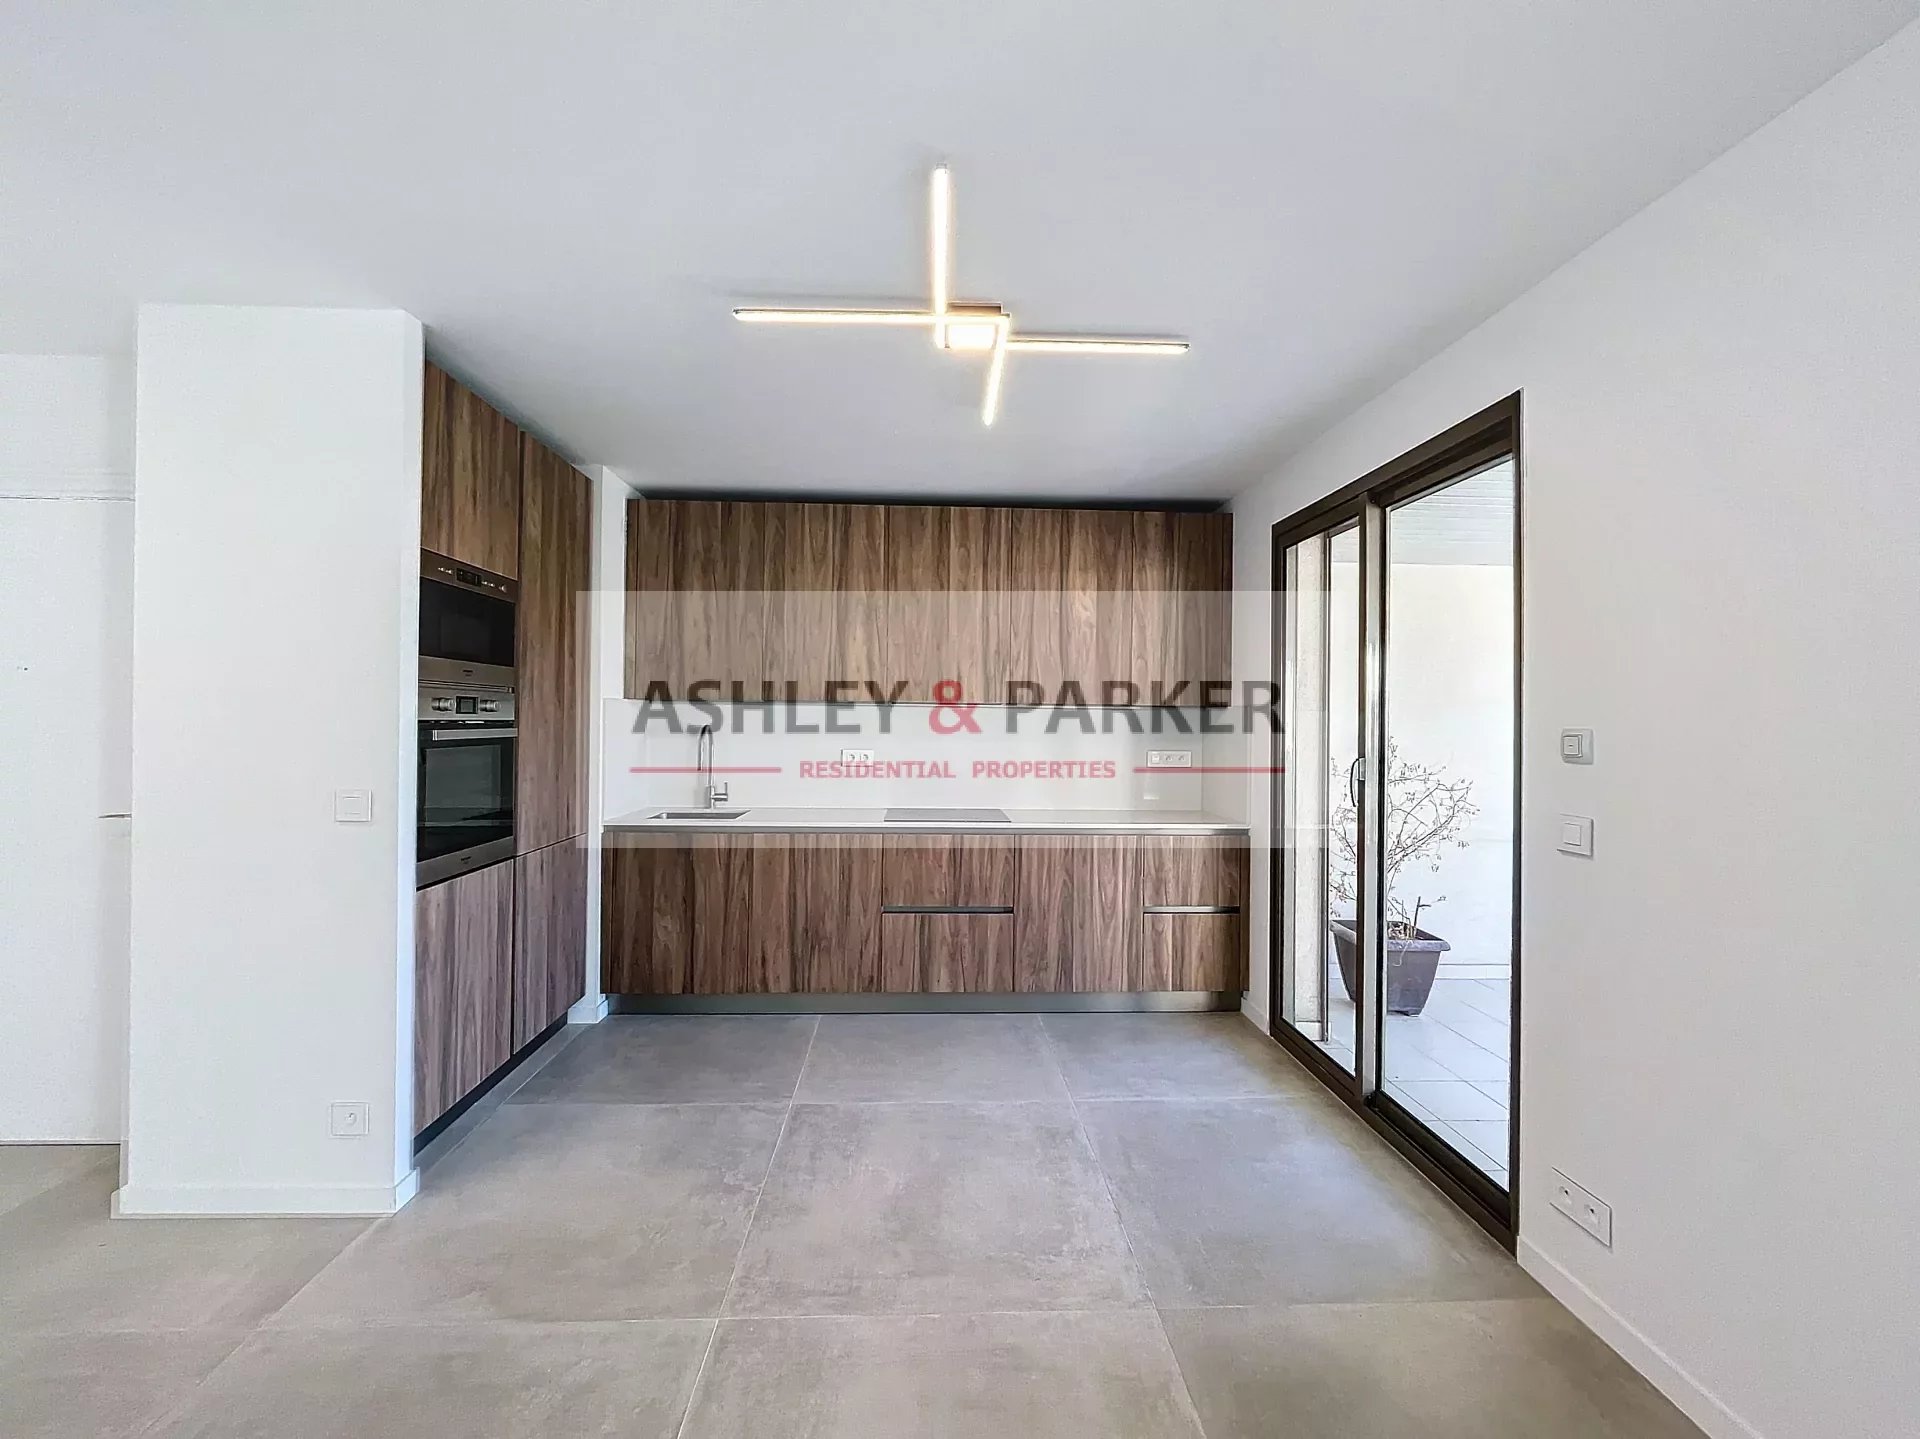 Vente Appartement 115m² 4 Pièces à Nice (06000) - Ashley & Parker